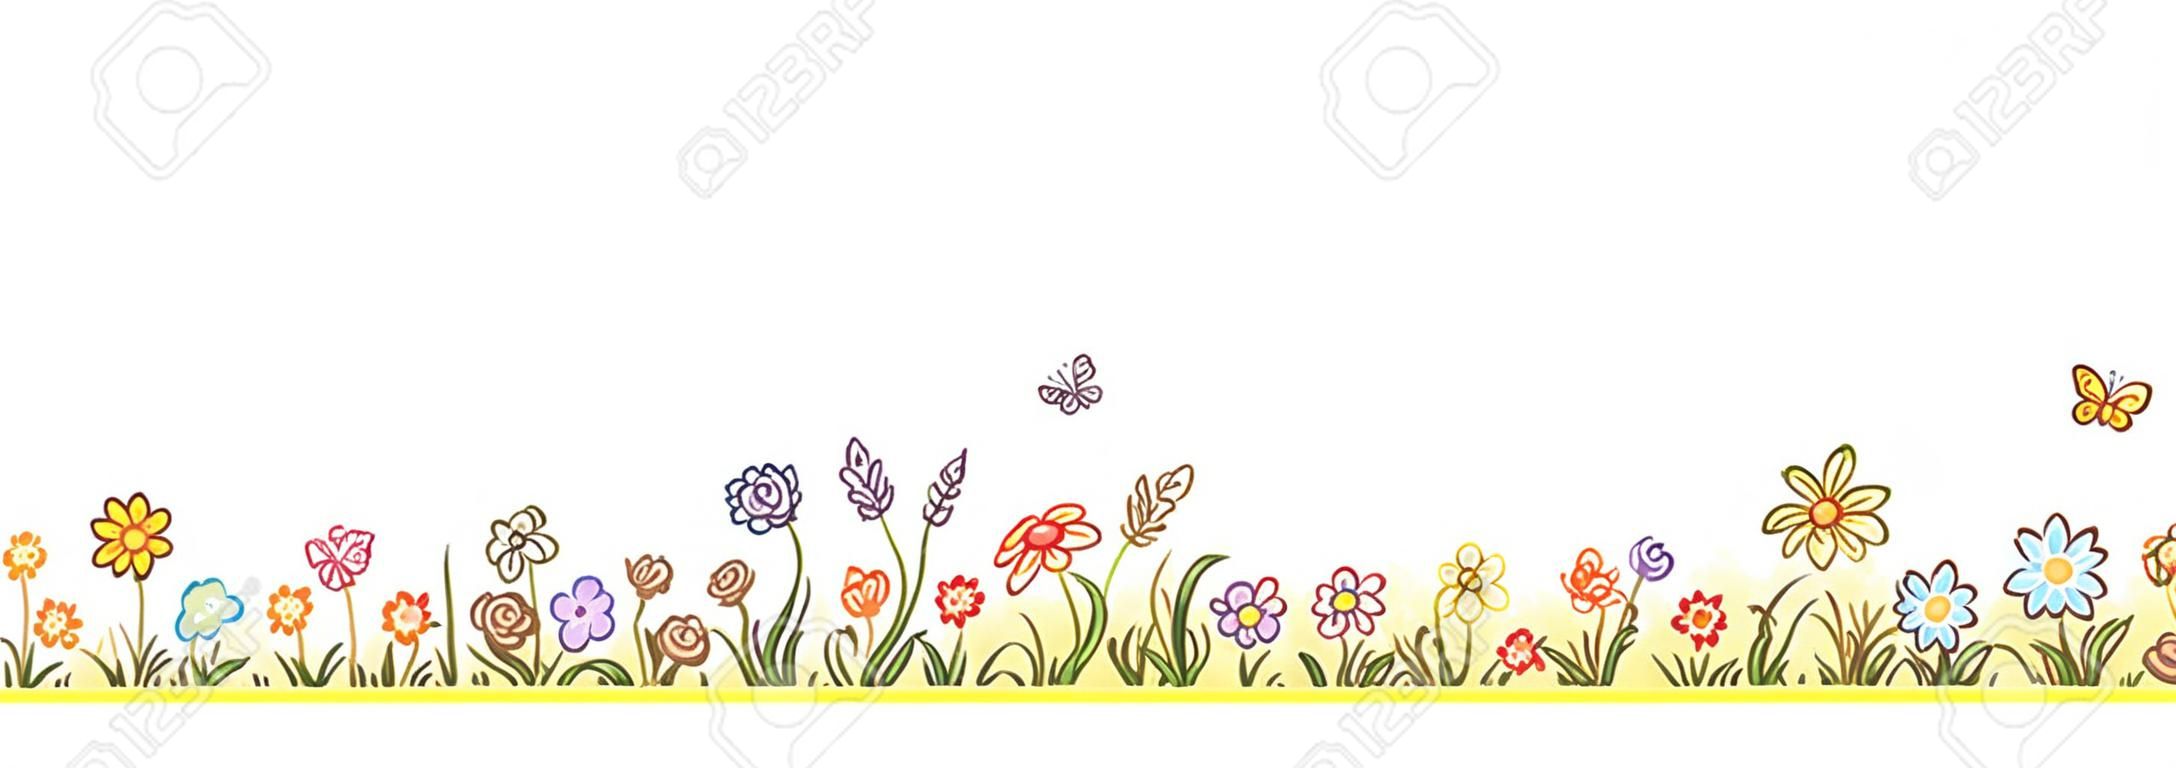 만화 꽃, 잔디의 제비 나비, 아니 그라디언트와 다채로운 꽃 테두리